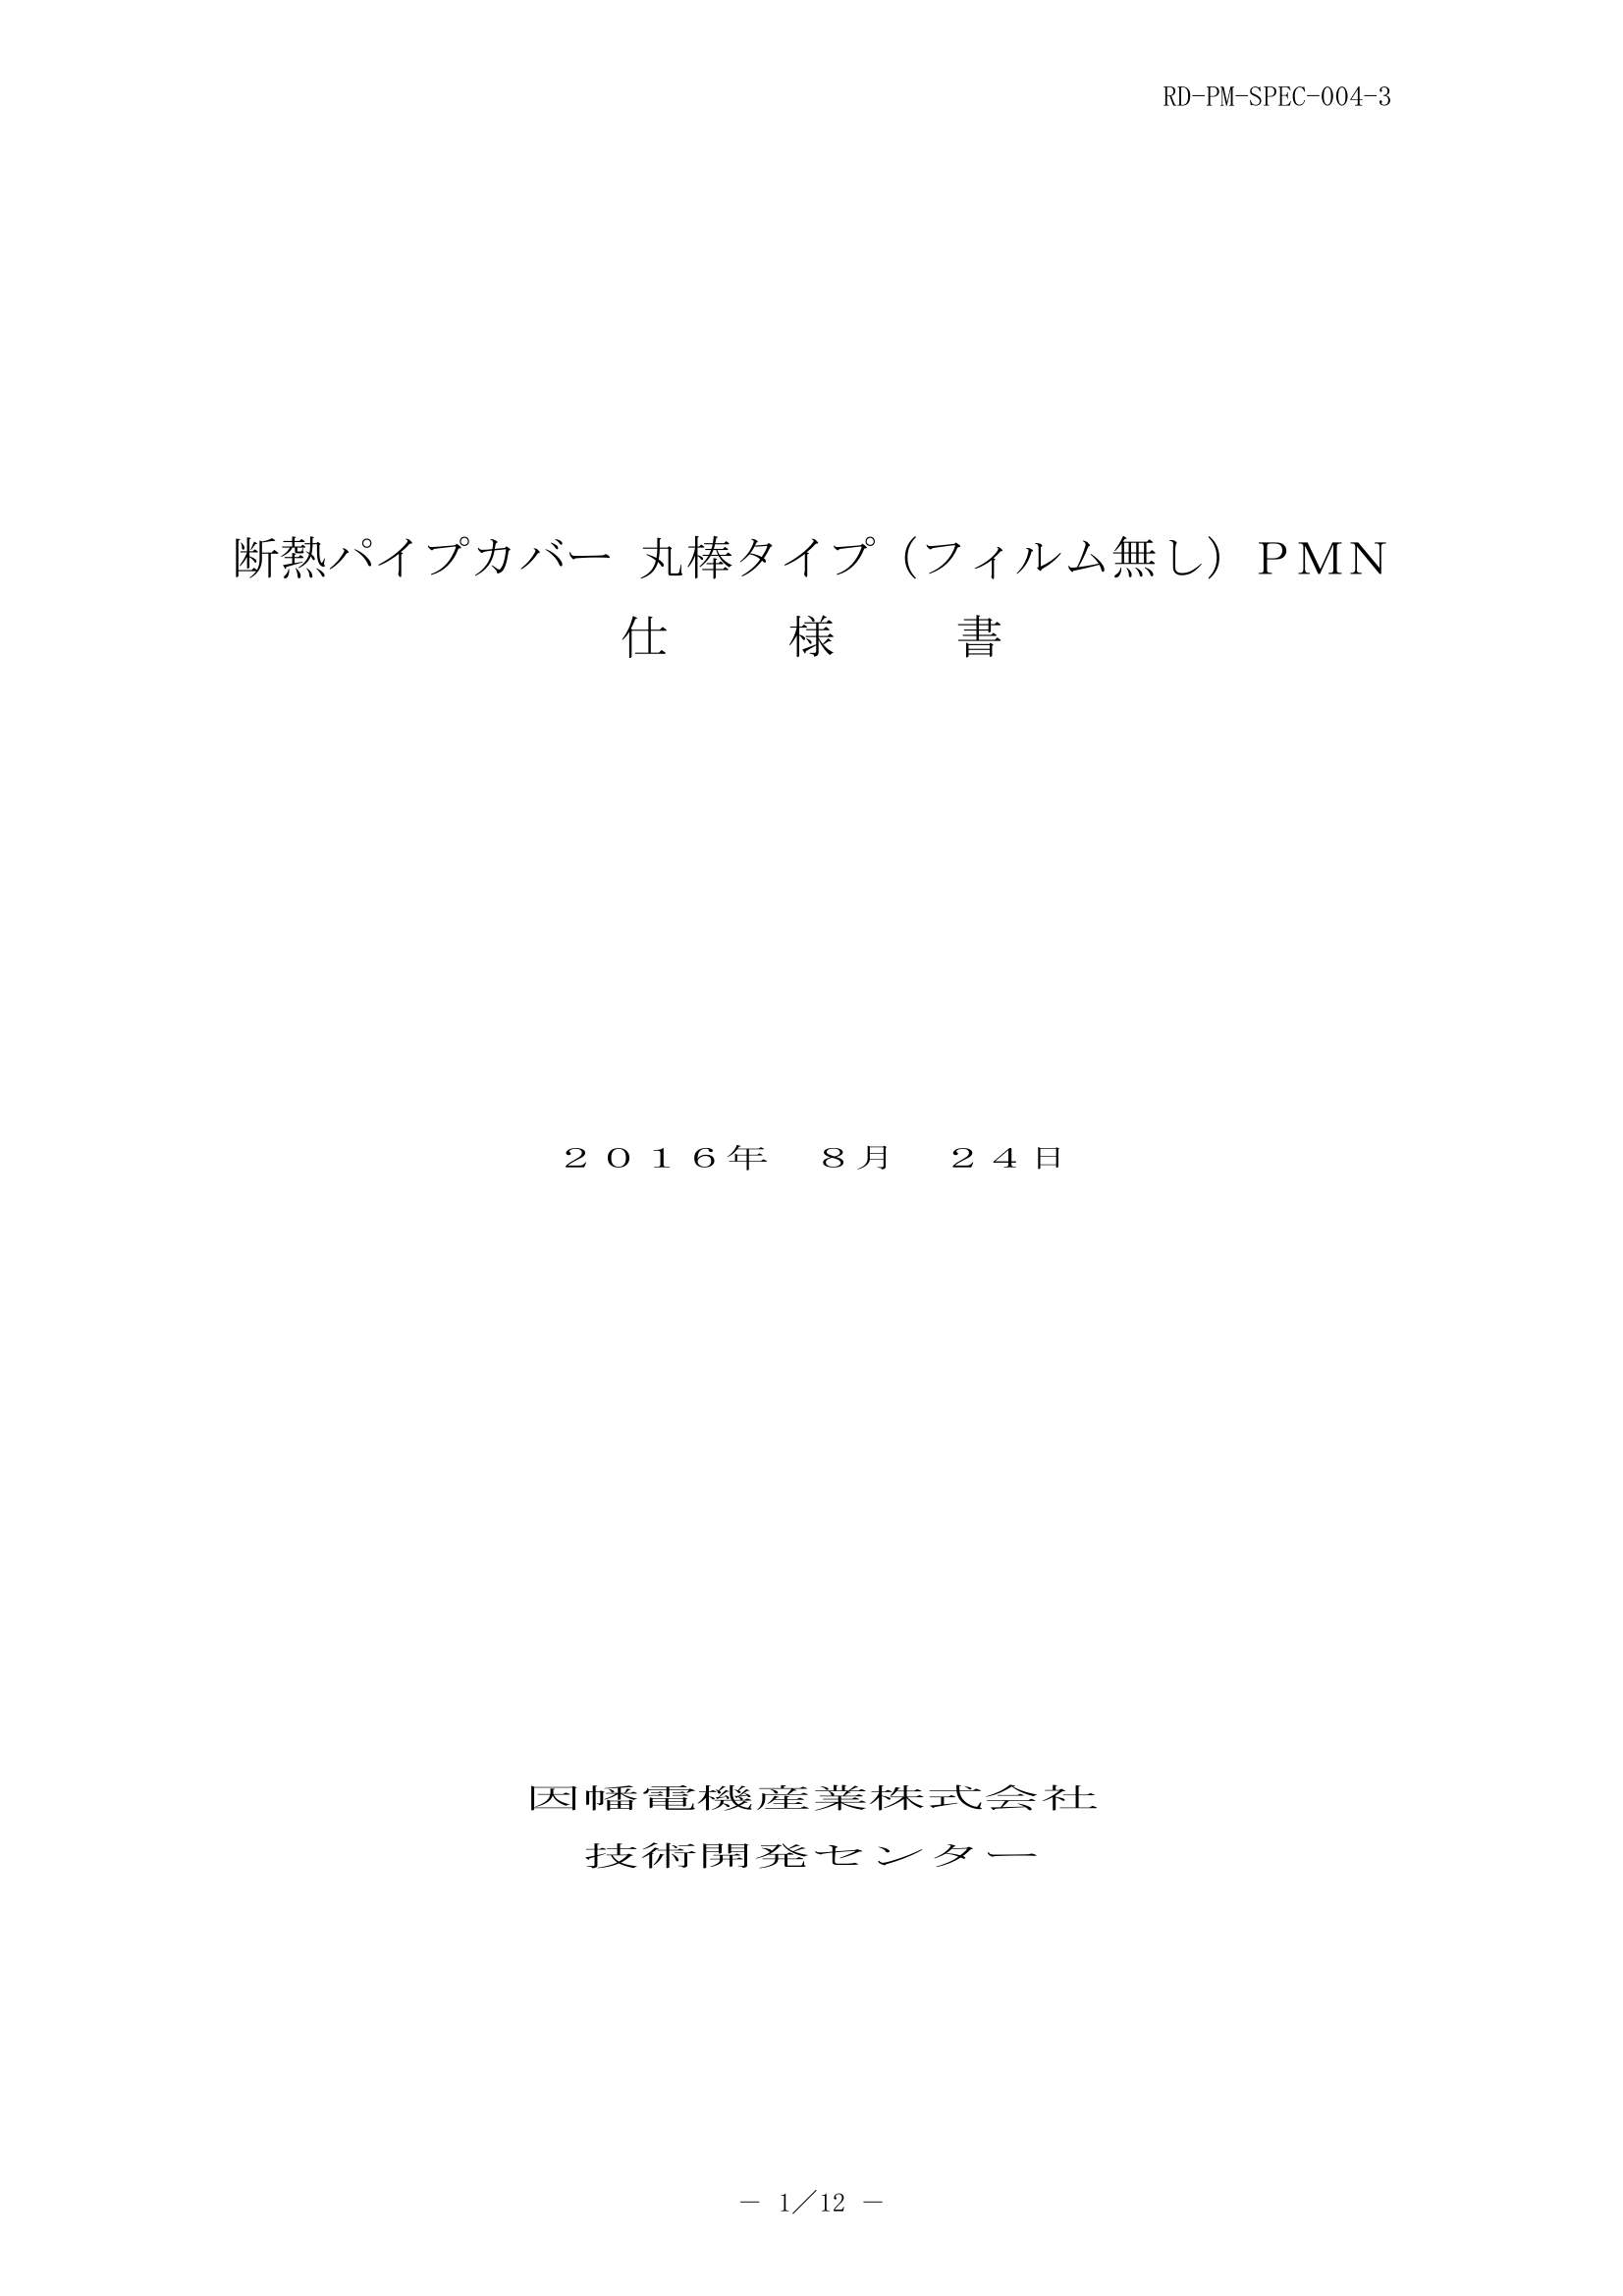 PMN_仕様書_20160824-0W.pdf